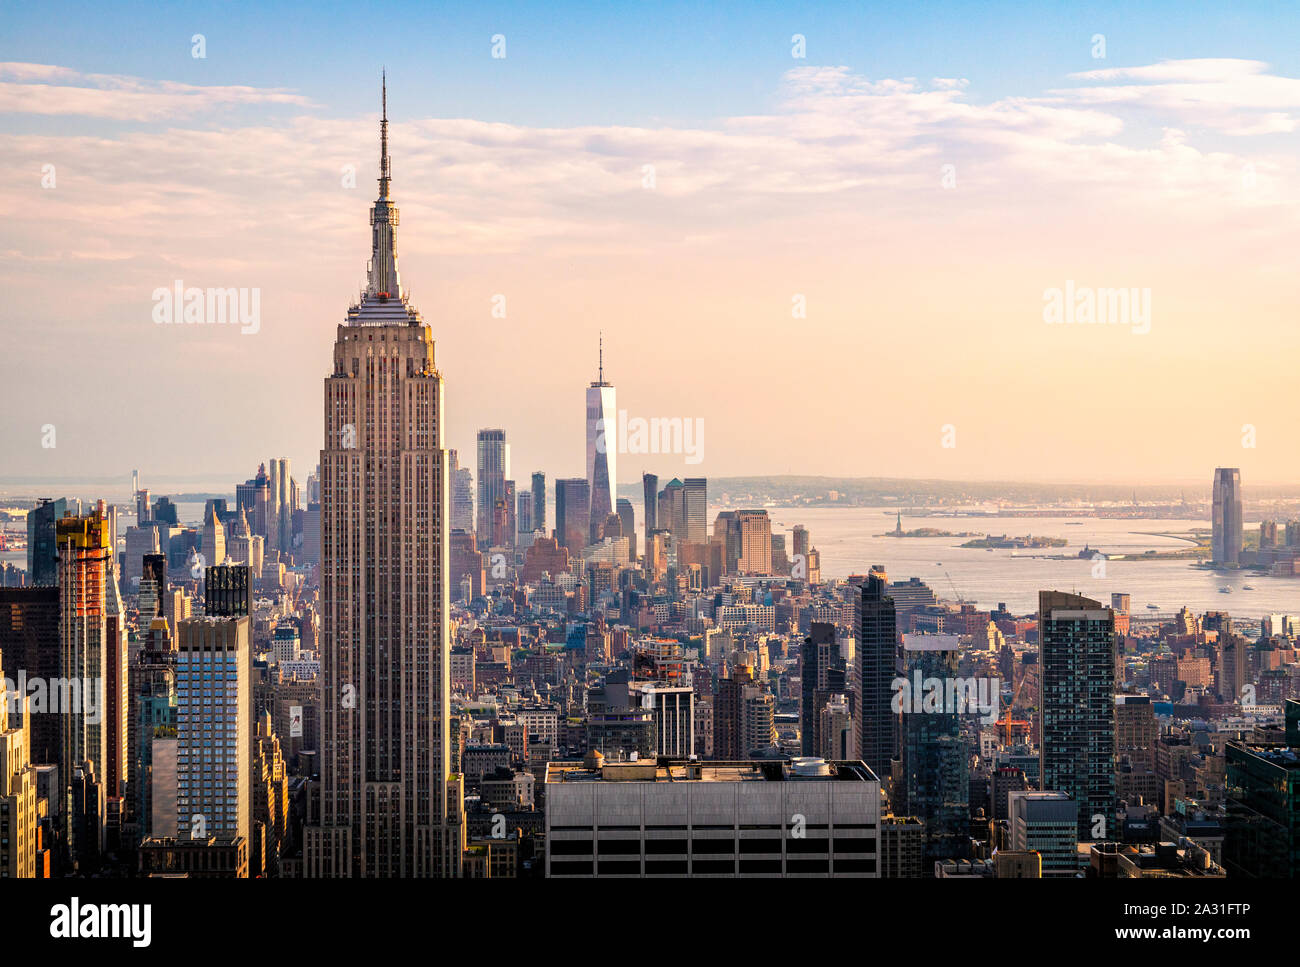 Die Skyline von New York City einschließlich Empire State Building, One World Trade Center und Hudson River, USA. Stockfoto